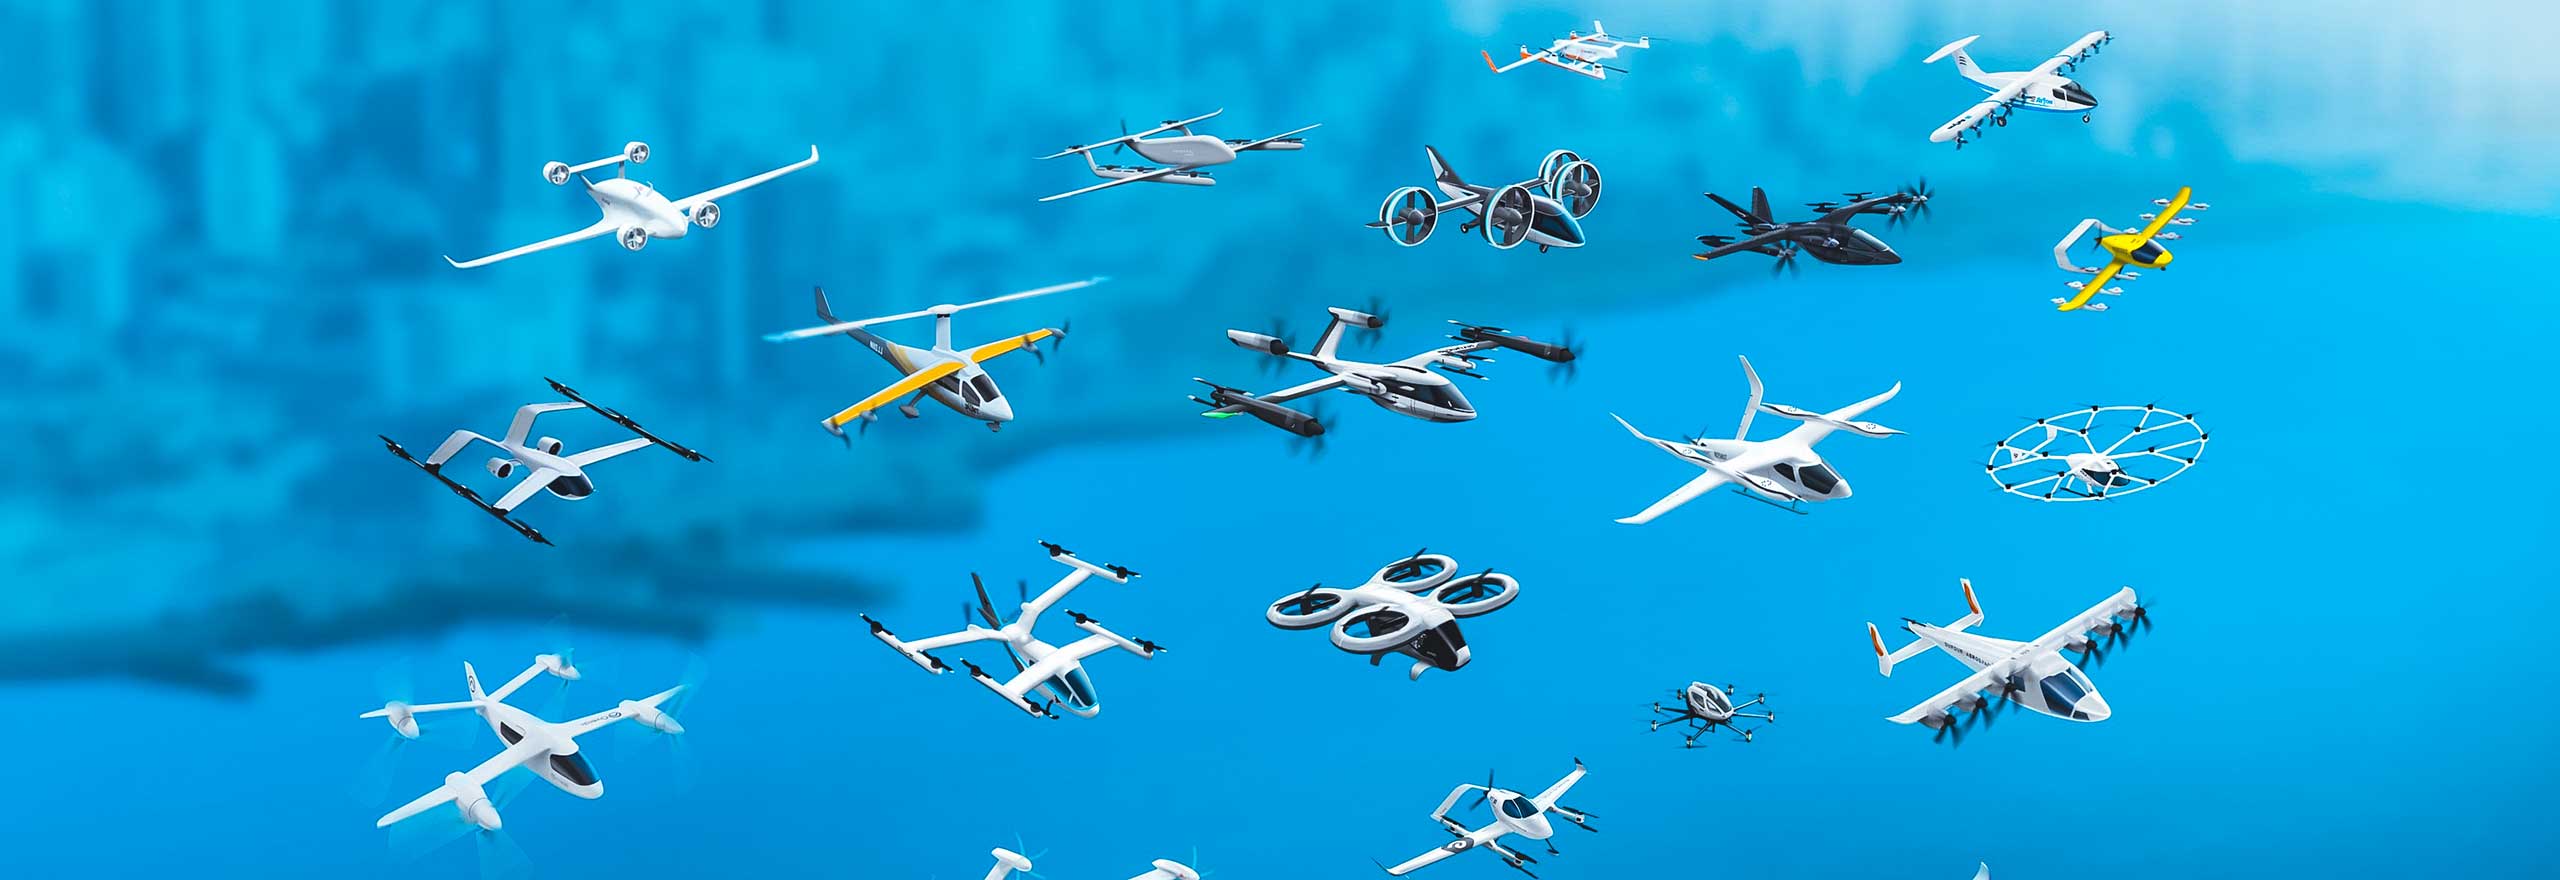 Diversos drones y aviones eléctricos de despegue y aterrizaje verticales (eVTOL) volando tras una simulación de análisis estructural en desarrollo